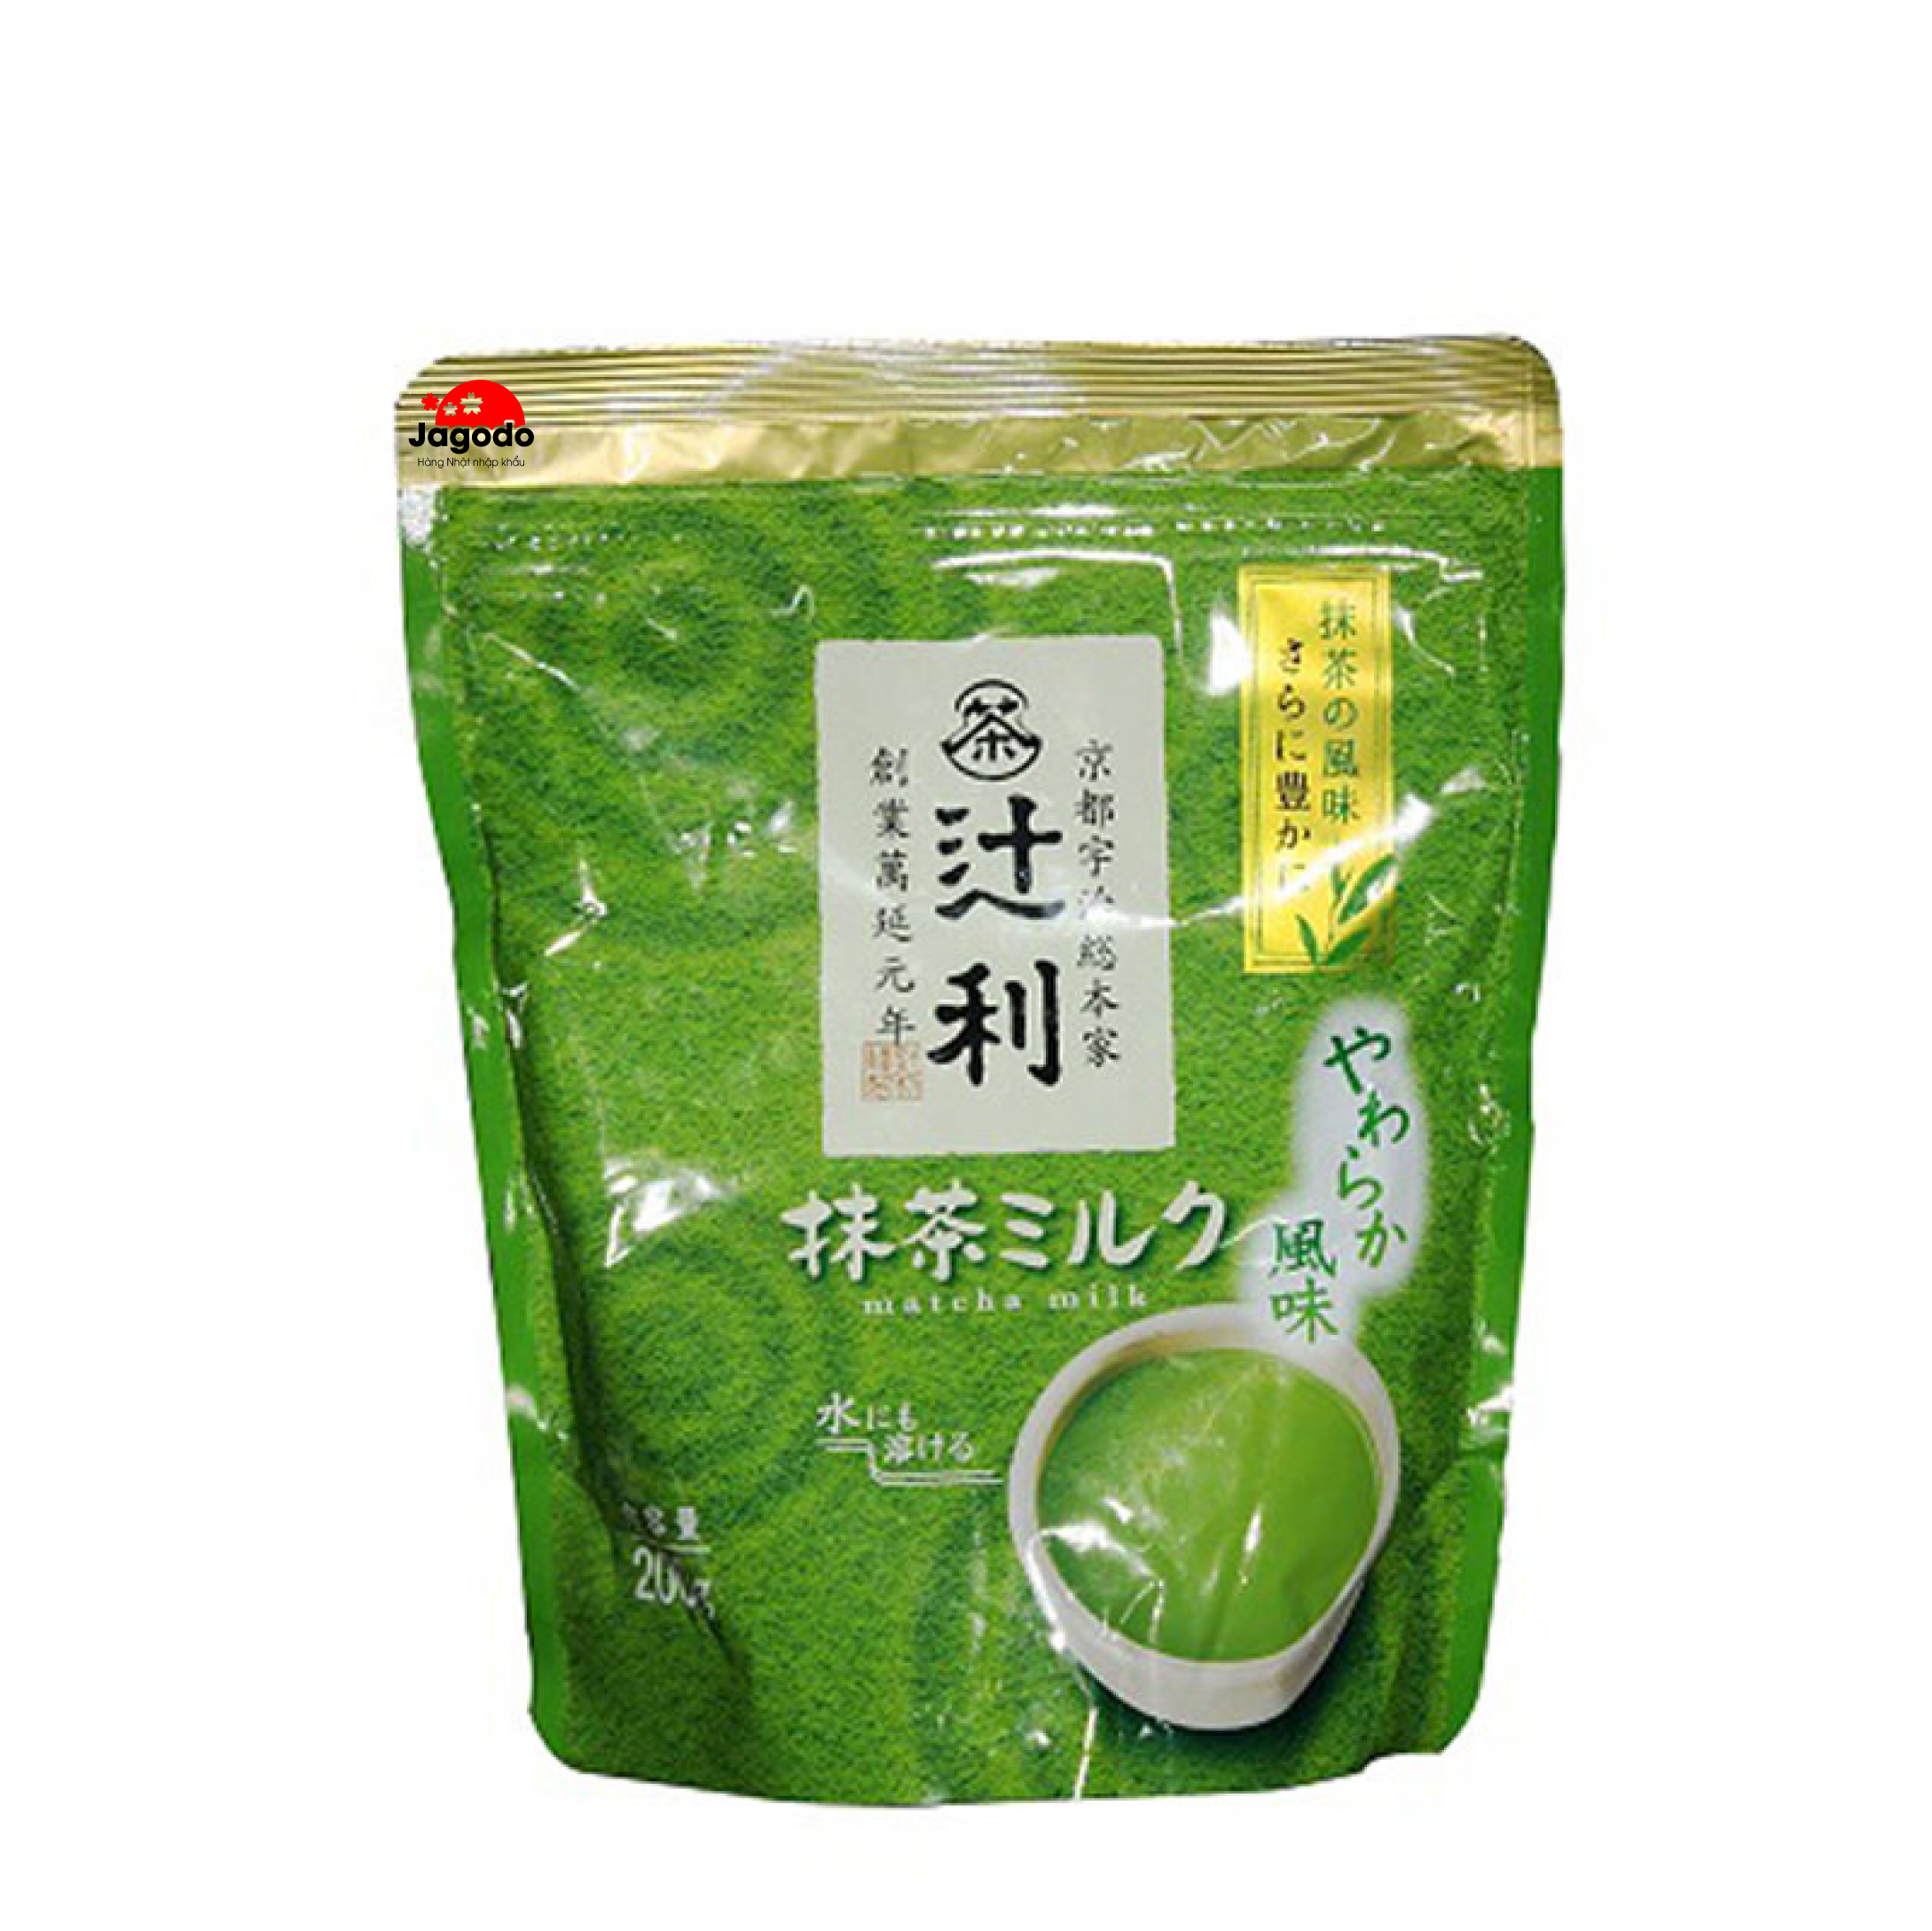 329236c1 d5b2beb0 tghn tra sua matcha nhat ban - Bột trà xanh Tsujiri Matcha Milk Nhật Bản 200g